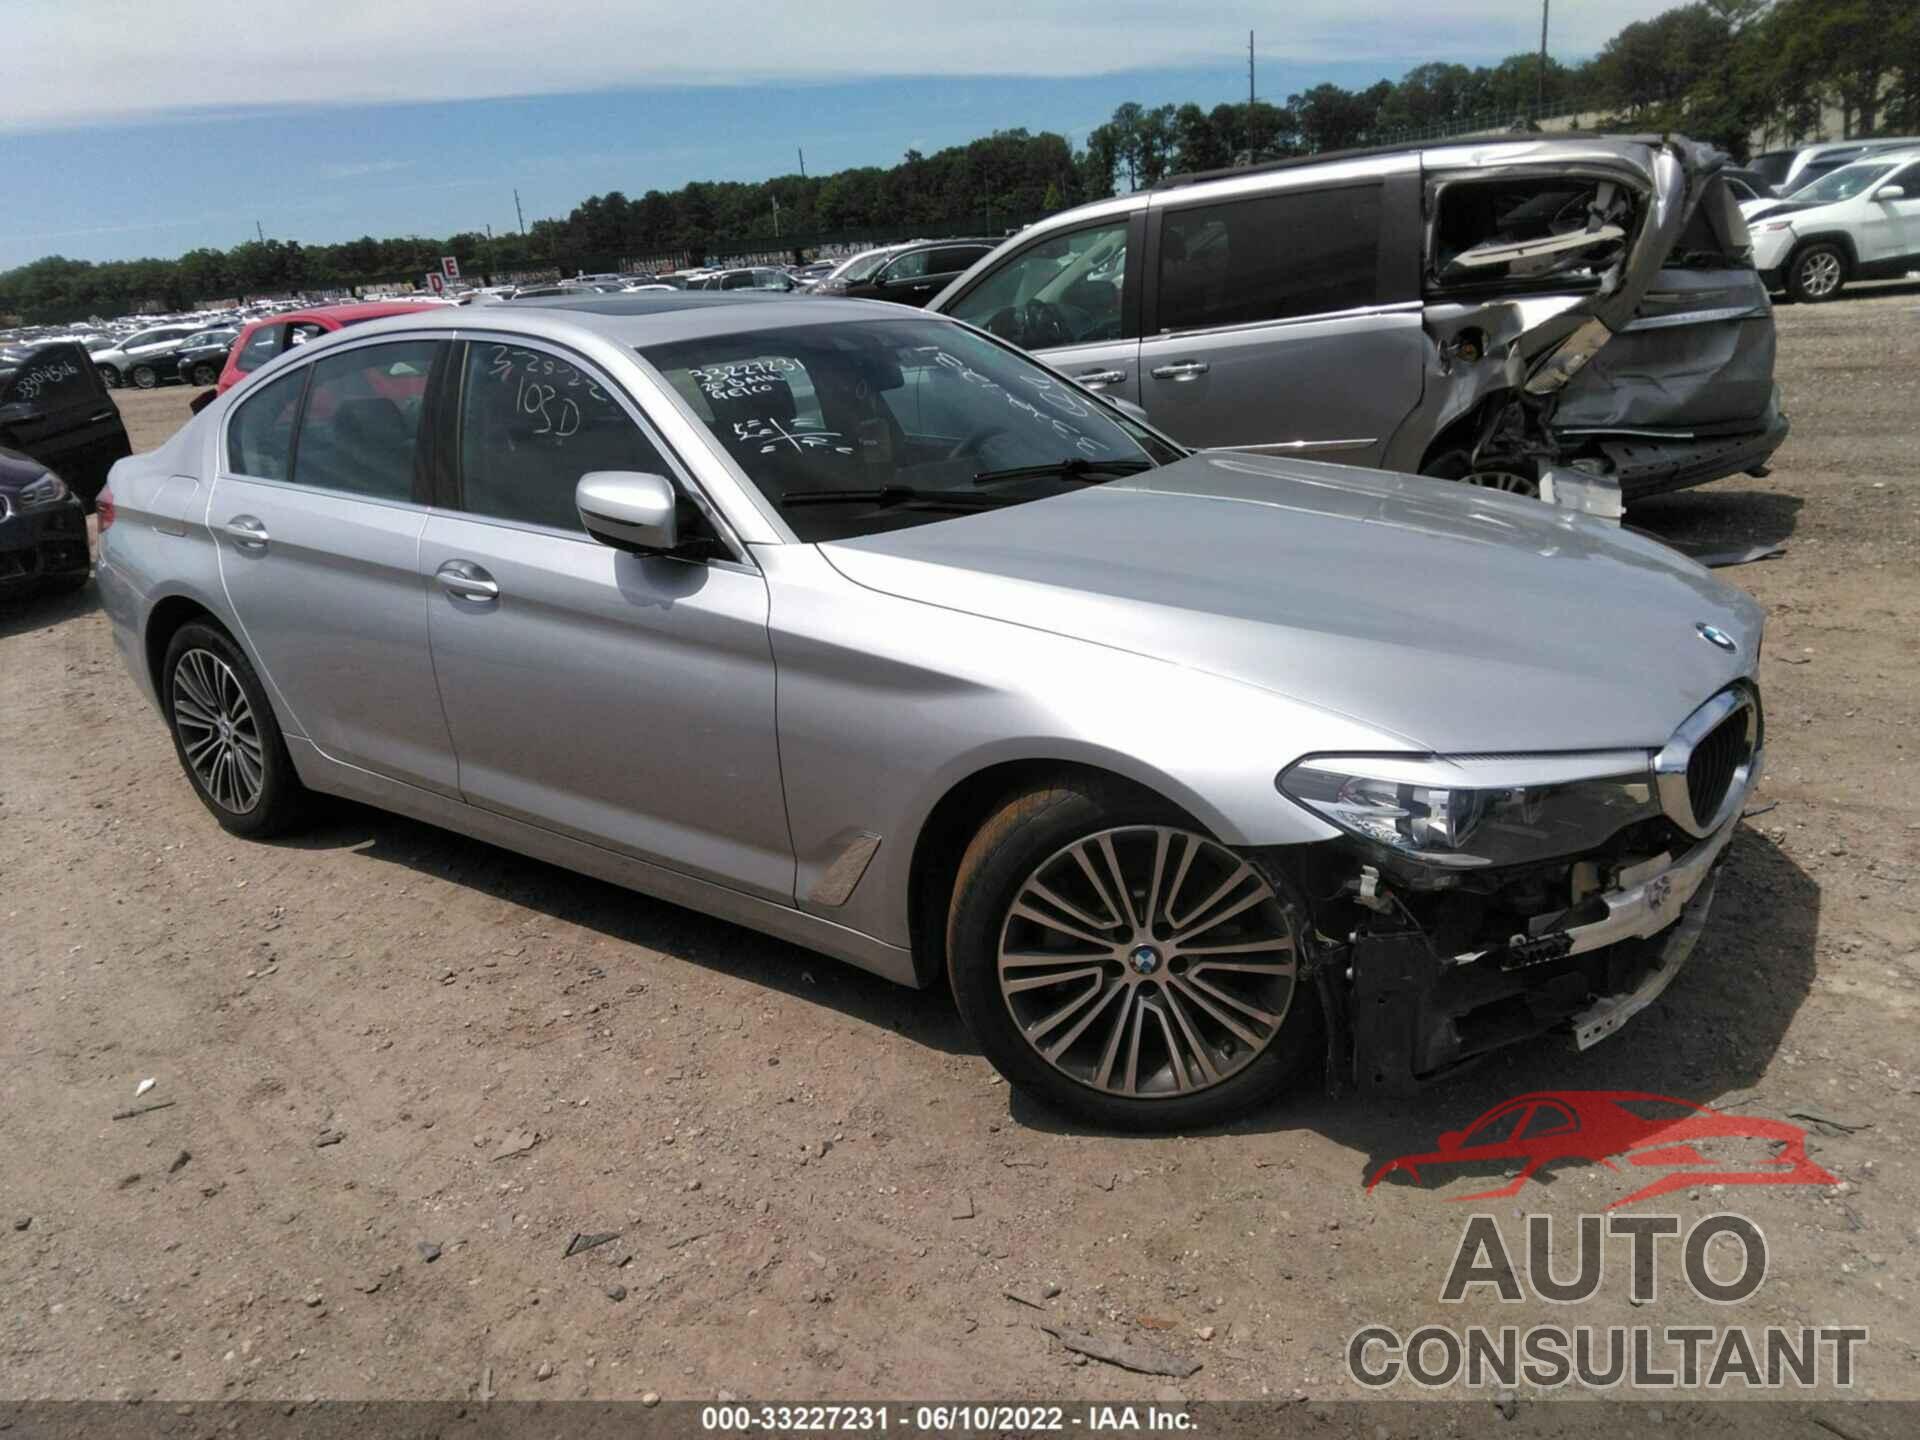 BMW 5 SERIES 2020 - WBAJR7C09LWW64665